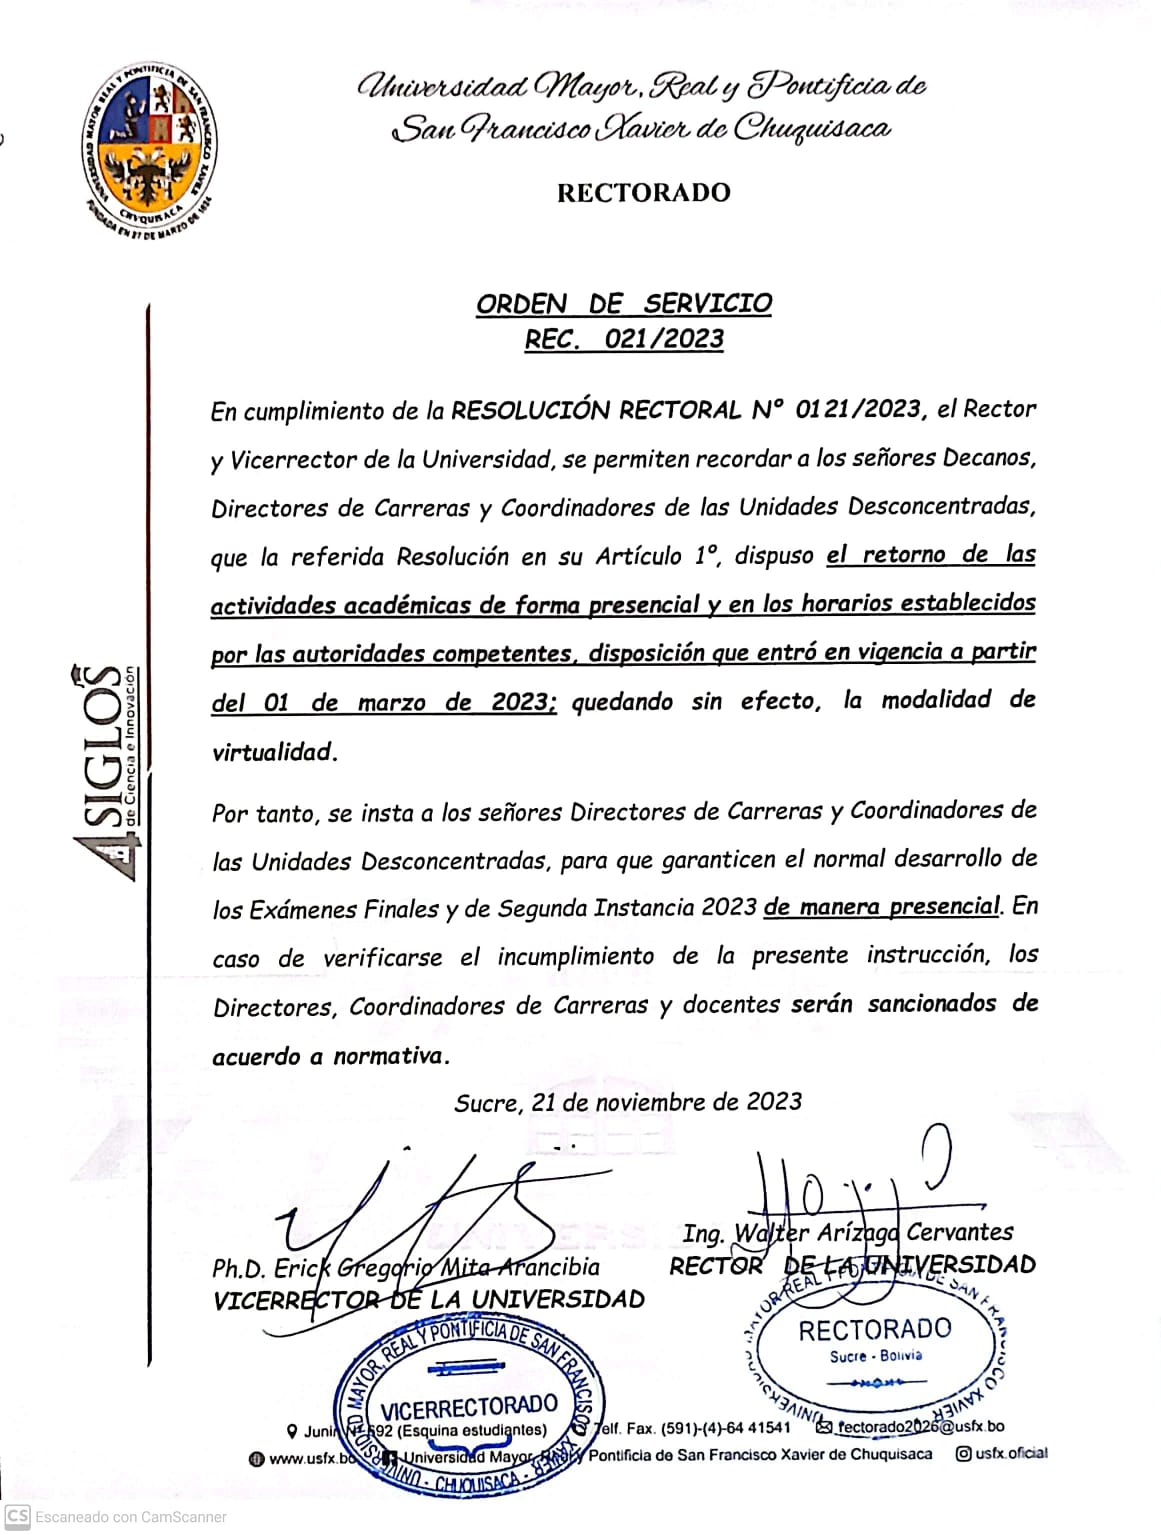 ORDEN DE SERVICIO RECTORAL. Nº 021/2023, RETORNO DE LAS ACTIVIDADES ACADÉMICAS DE FORMA PRESENCIAL.